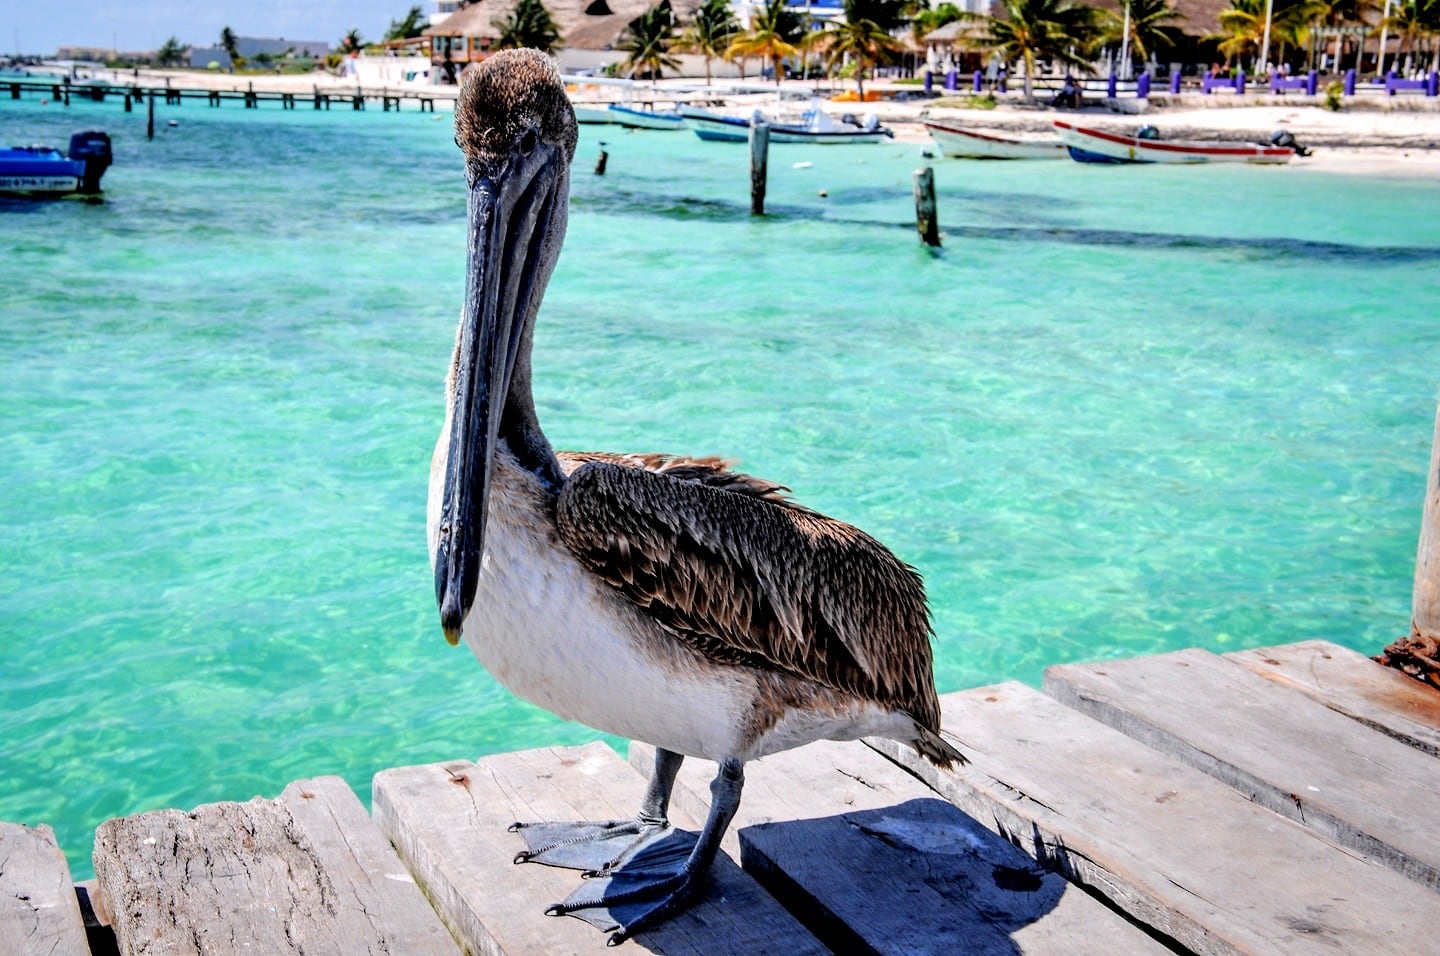 large pelican on dock in Puerto Morelos Mexico